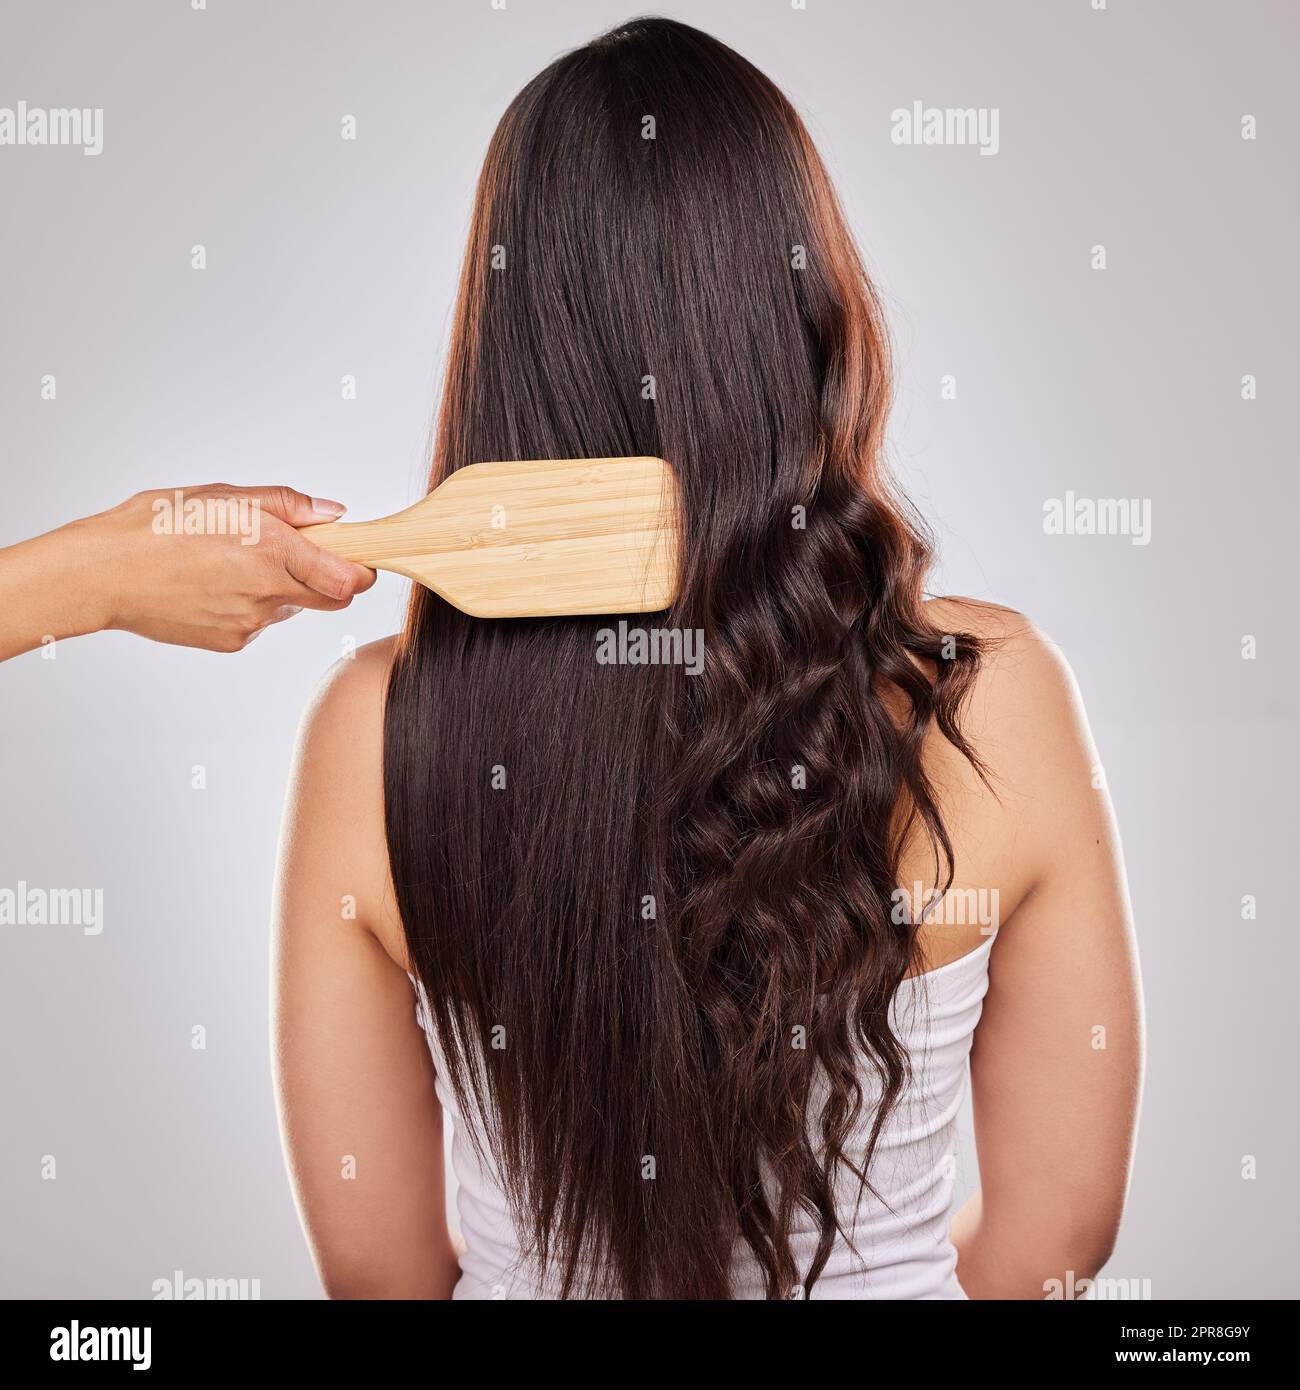 Il modo in cui si prende cura dei capelli determina i risultati che si ottengono. Scatto di una donna in posa con capelli semi-stirati e semi arricciati. Foto Stock